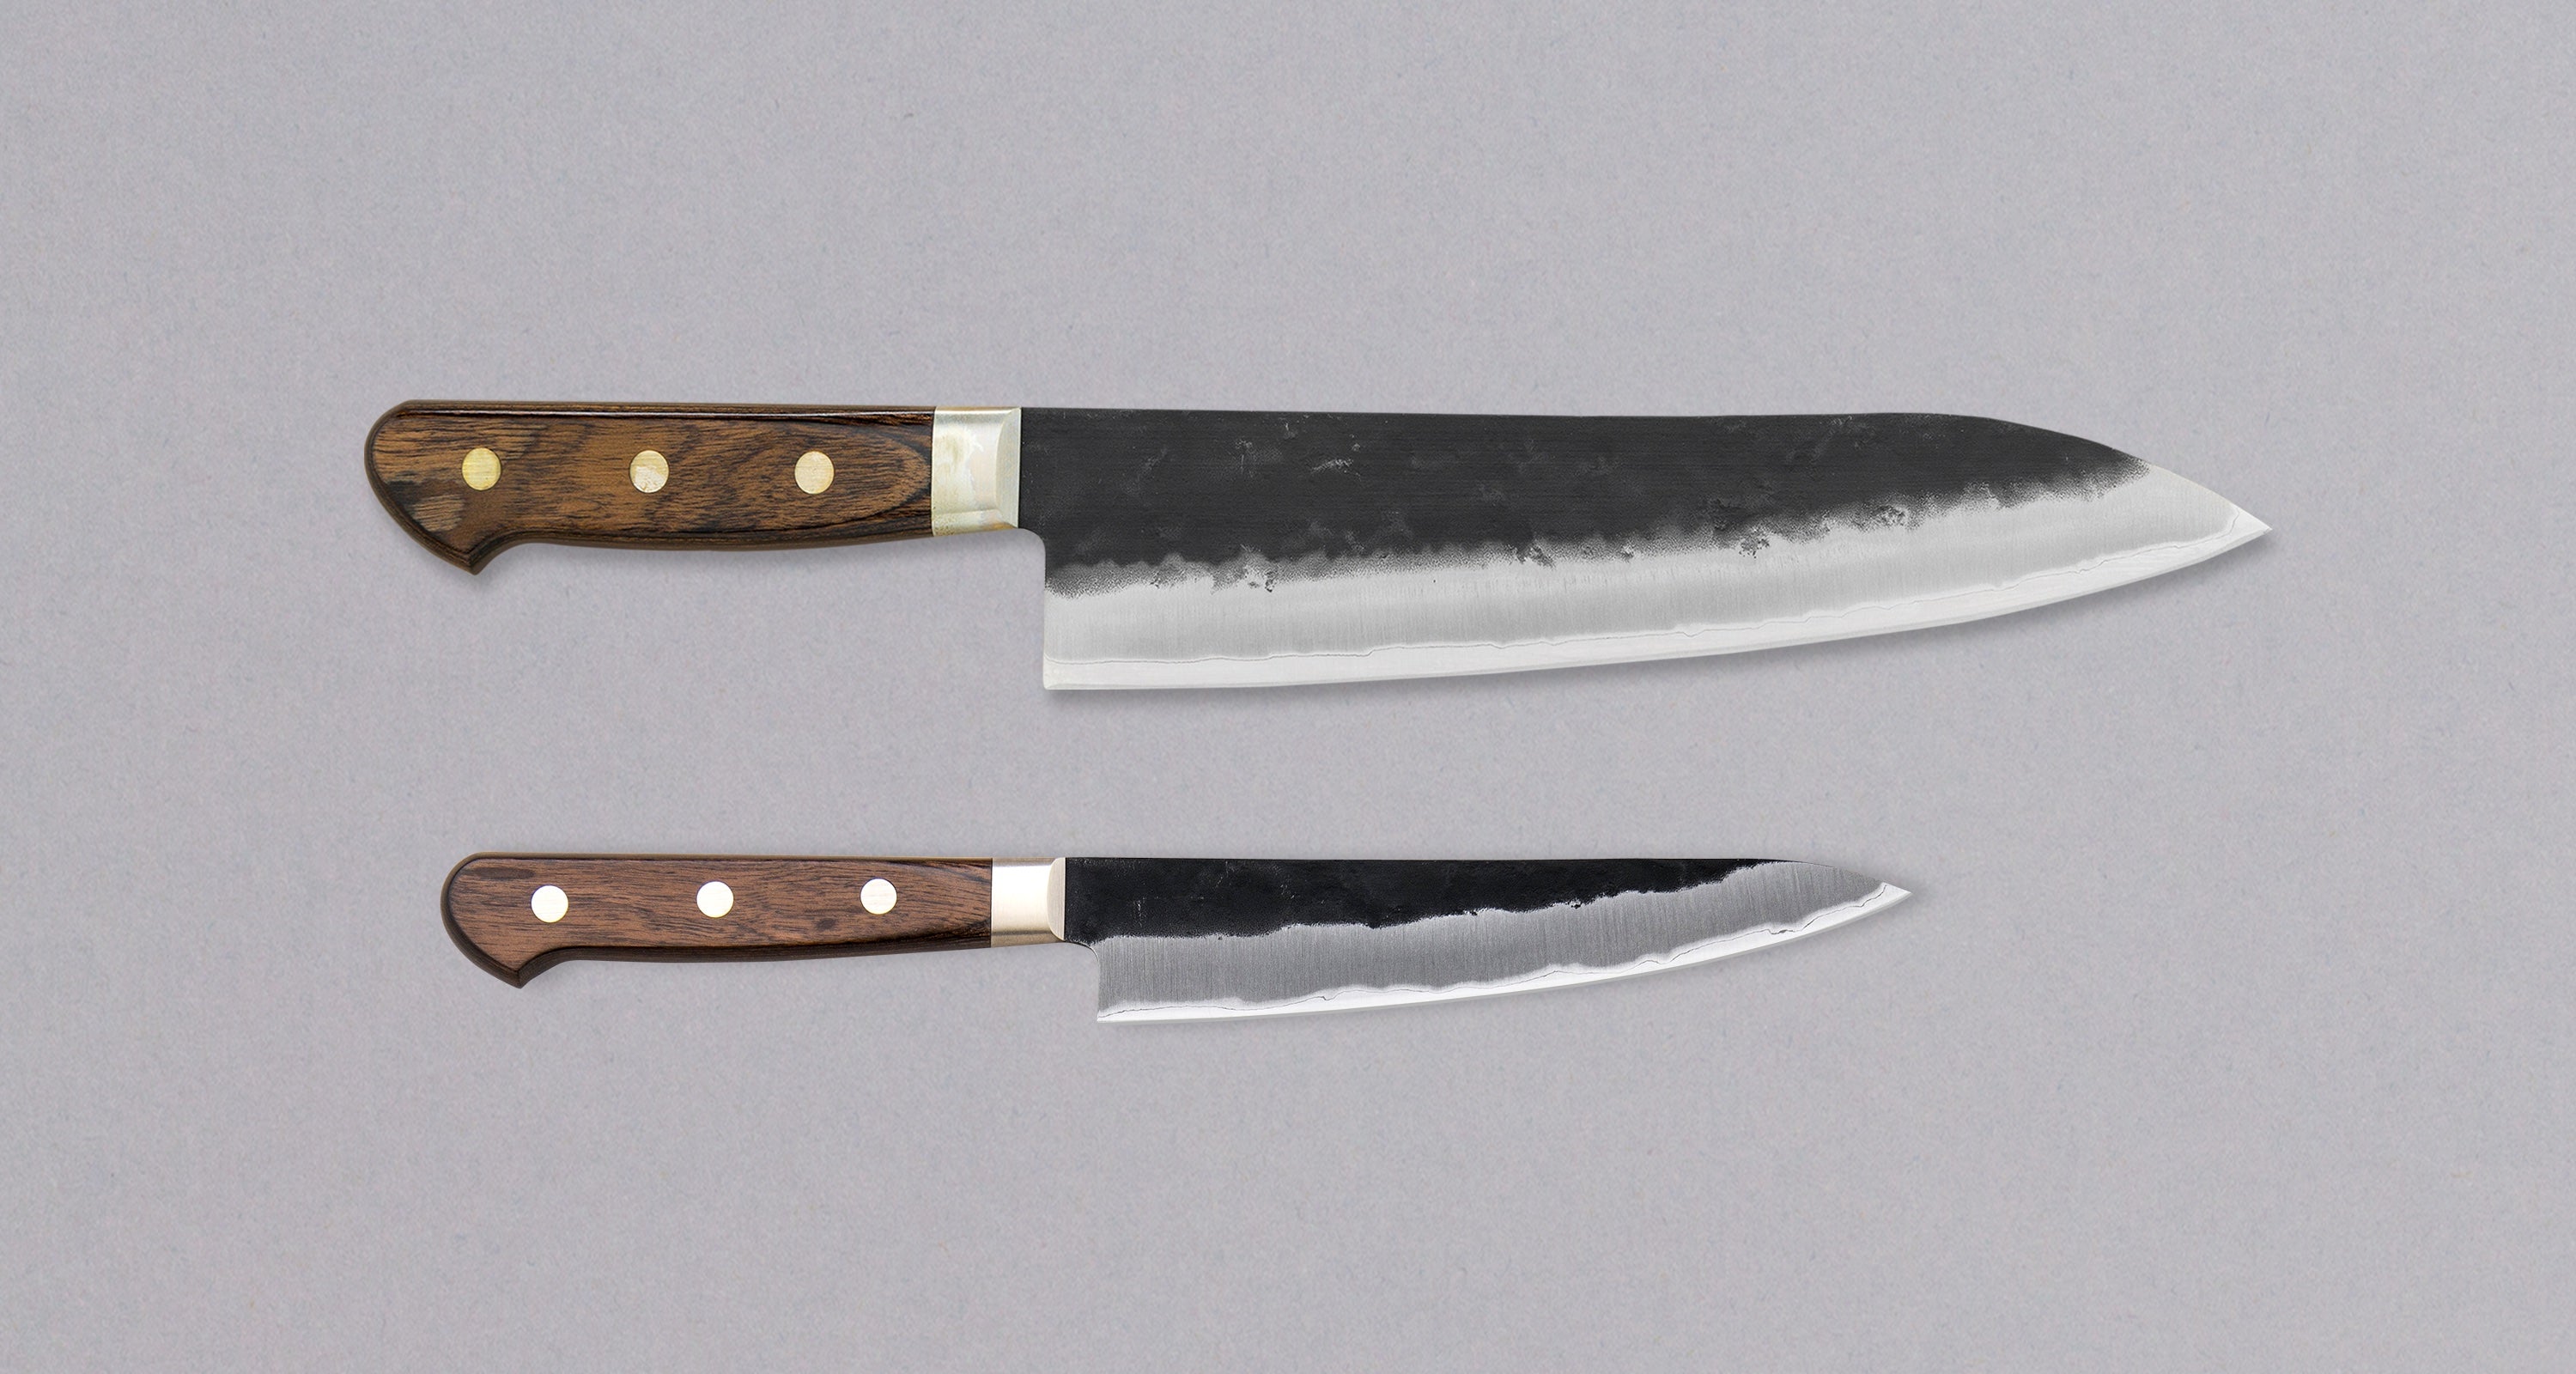 Kage Knife Set